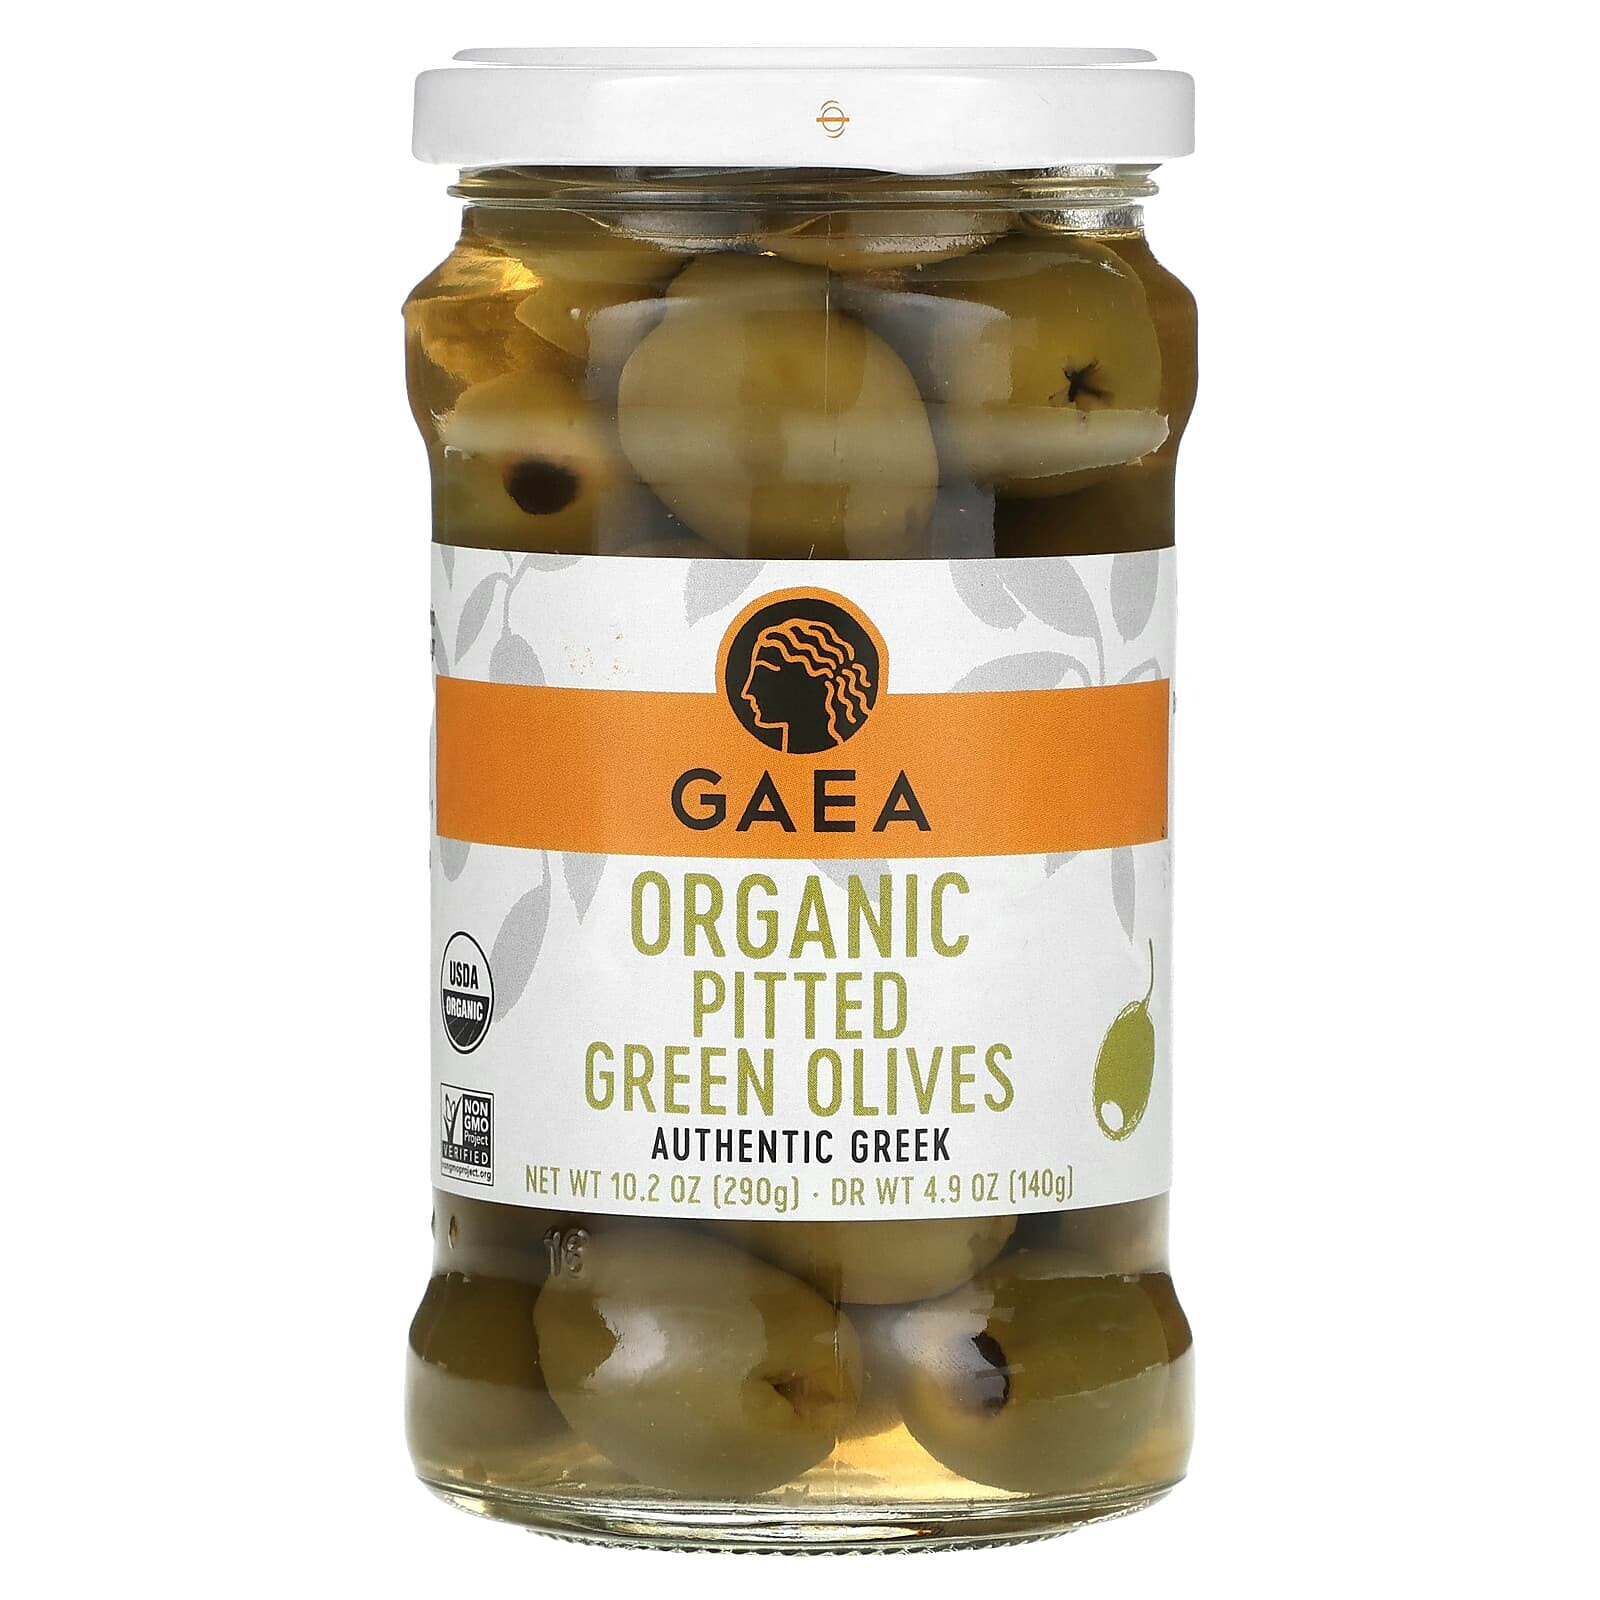 Gaea, греческие оливки, смешанные оливки без косточек, зеленые, черные и коричневатые, 150 г (5,3 унции)